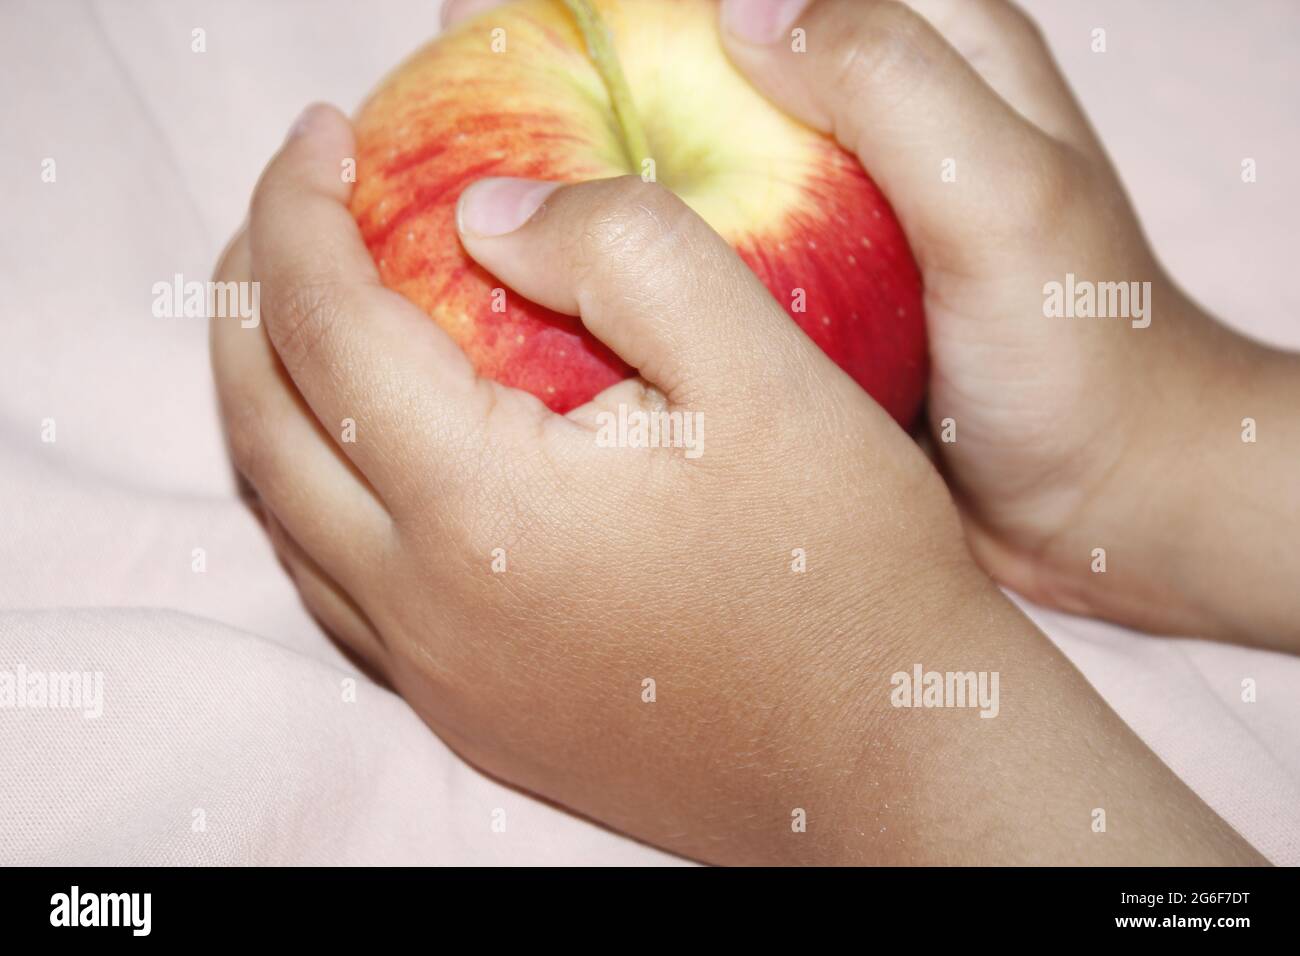 Un petit enfant mangeant une pomme rouge. Banque D'Images